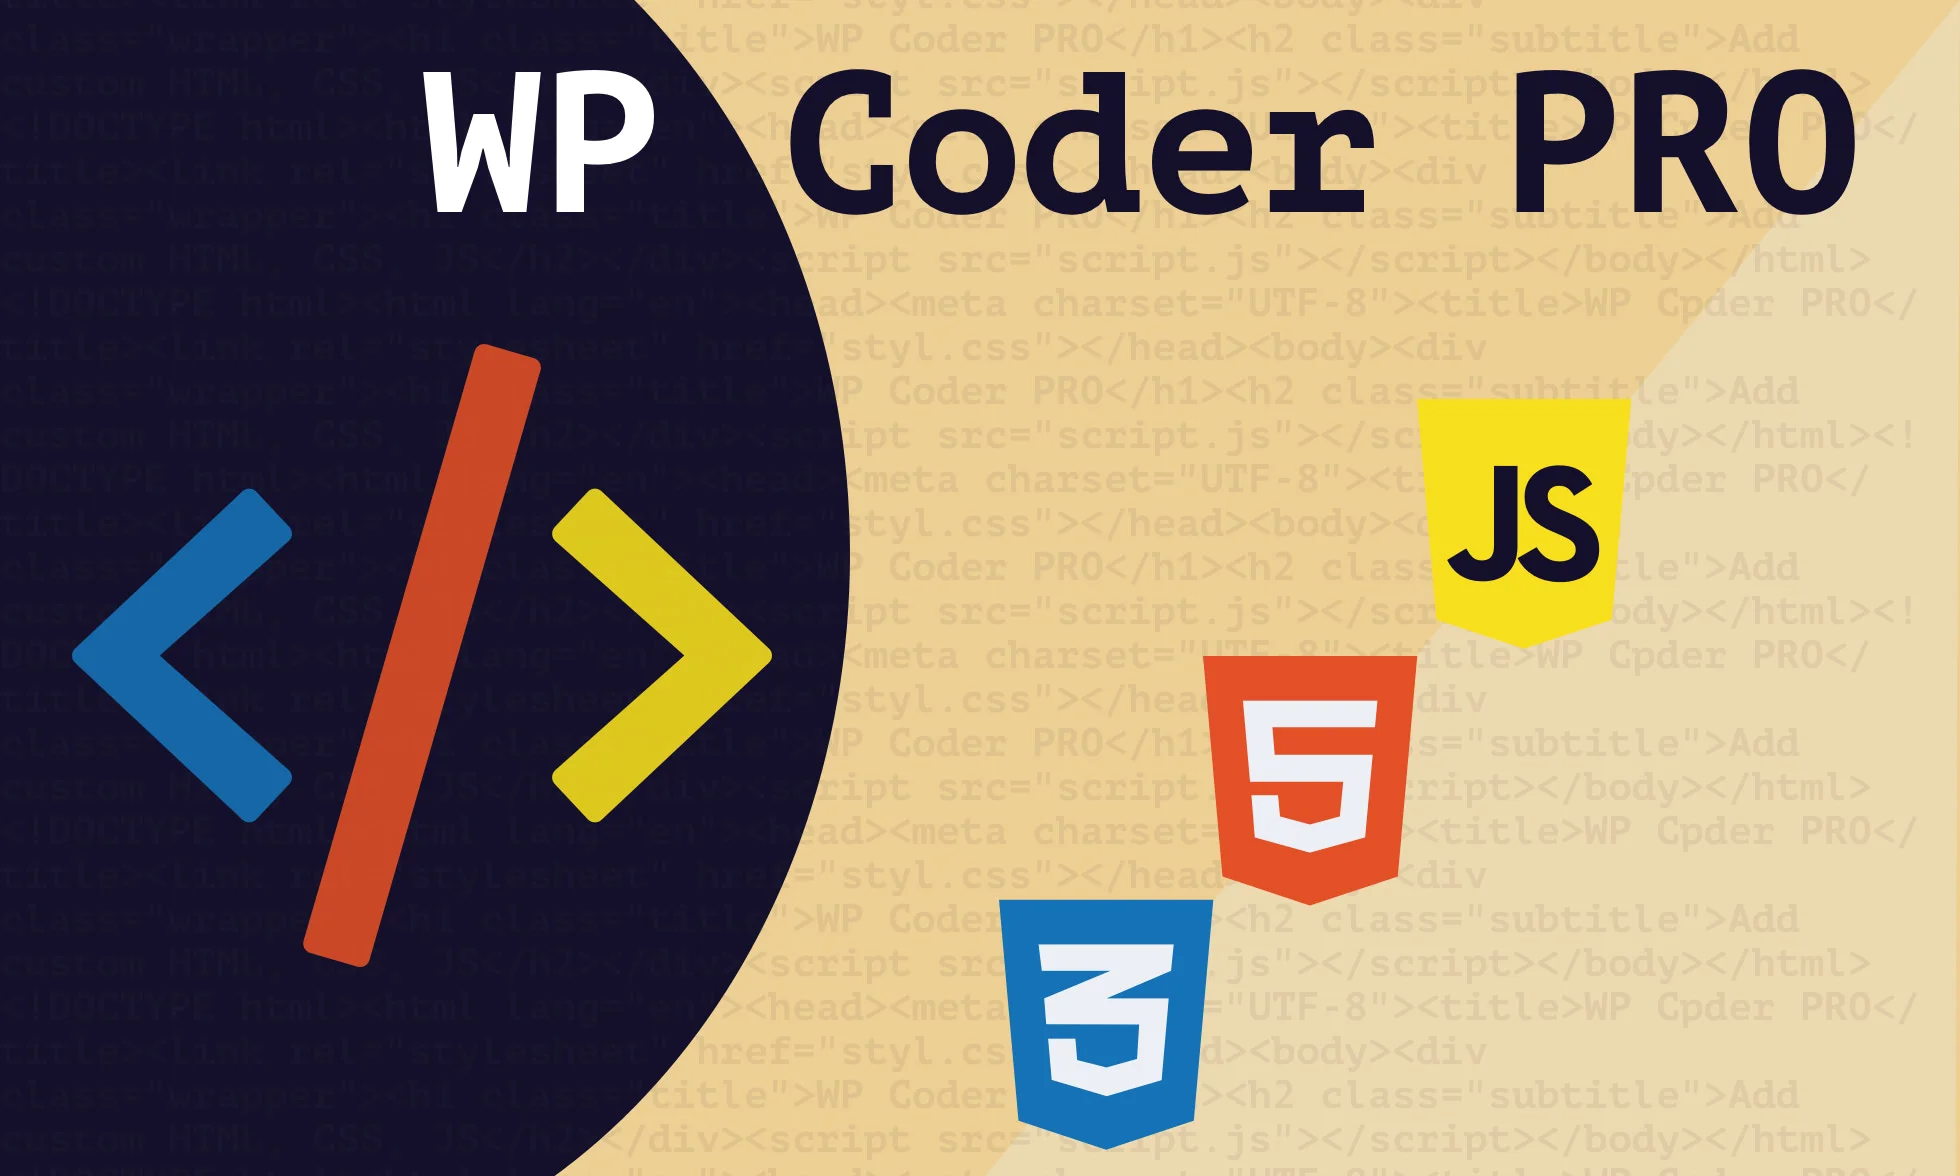 WP Coder Pro